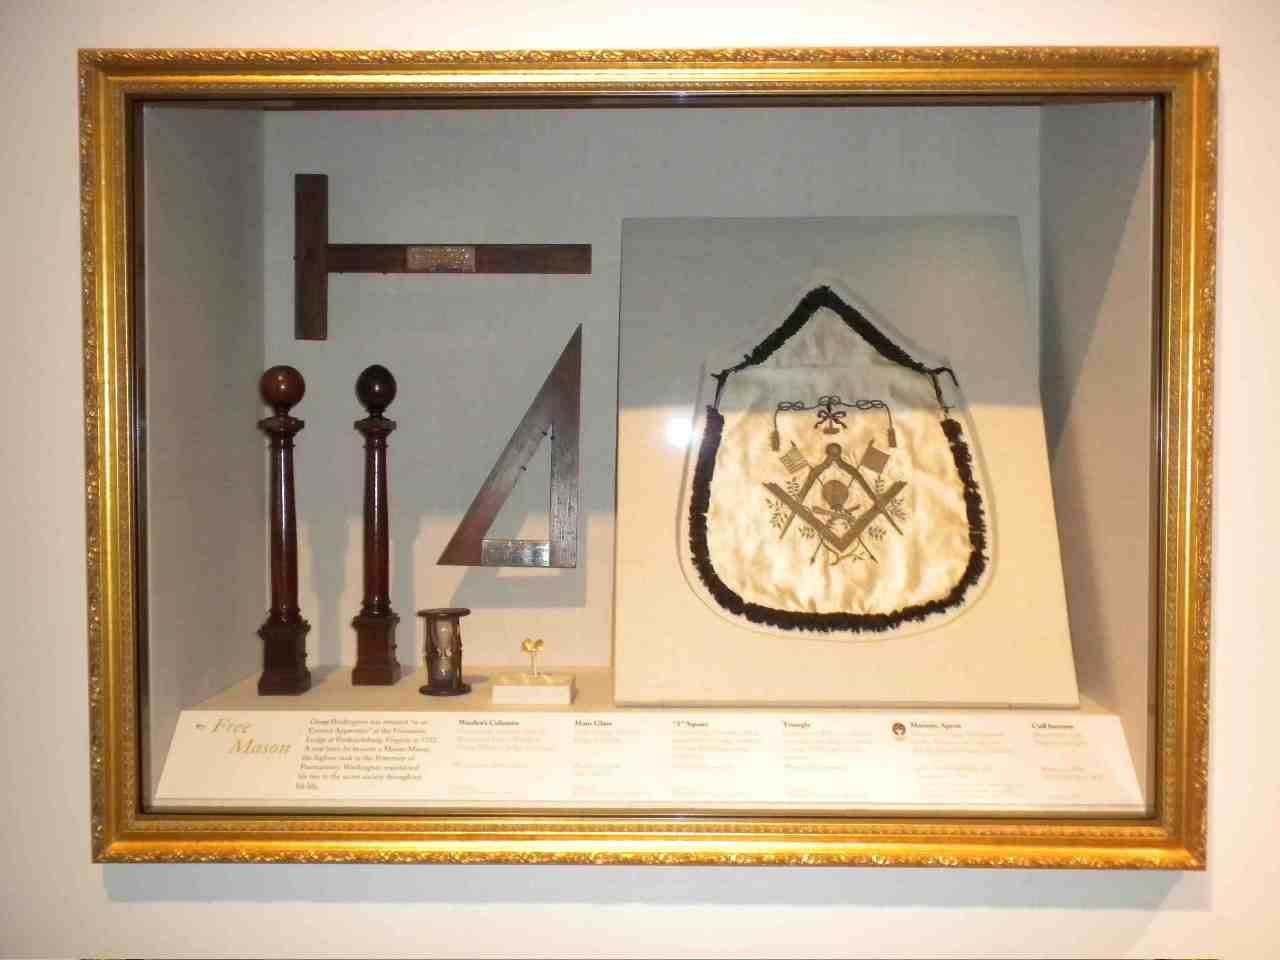 George Washington's Masonic Apron